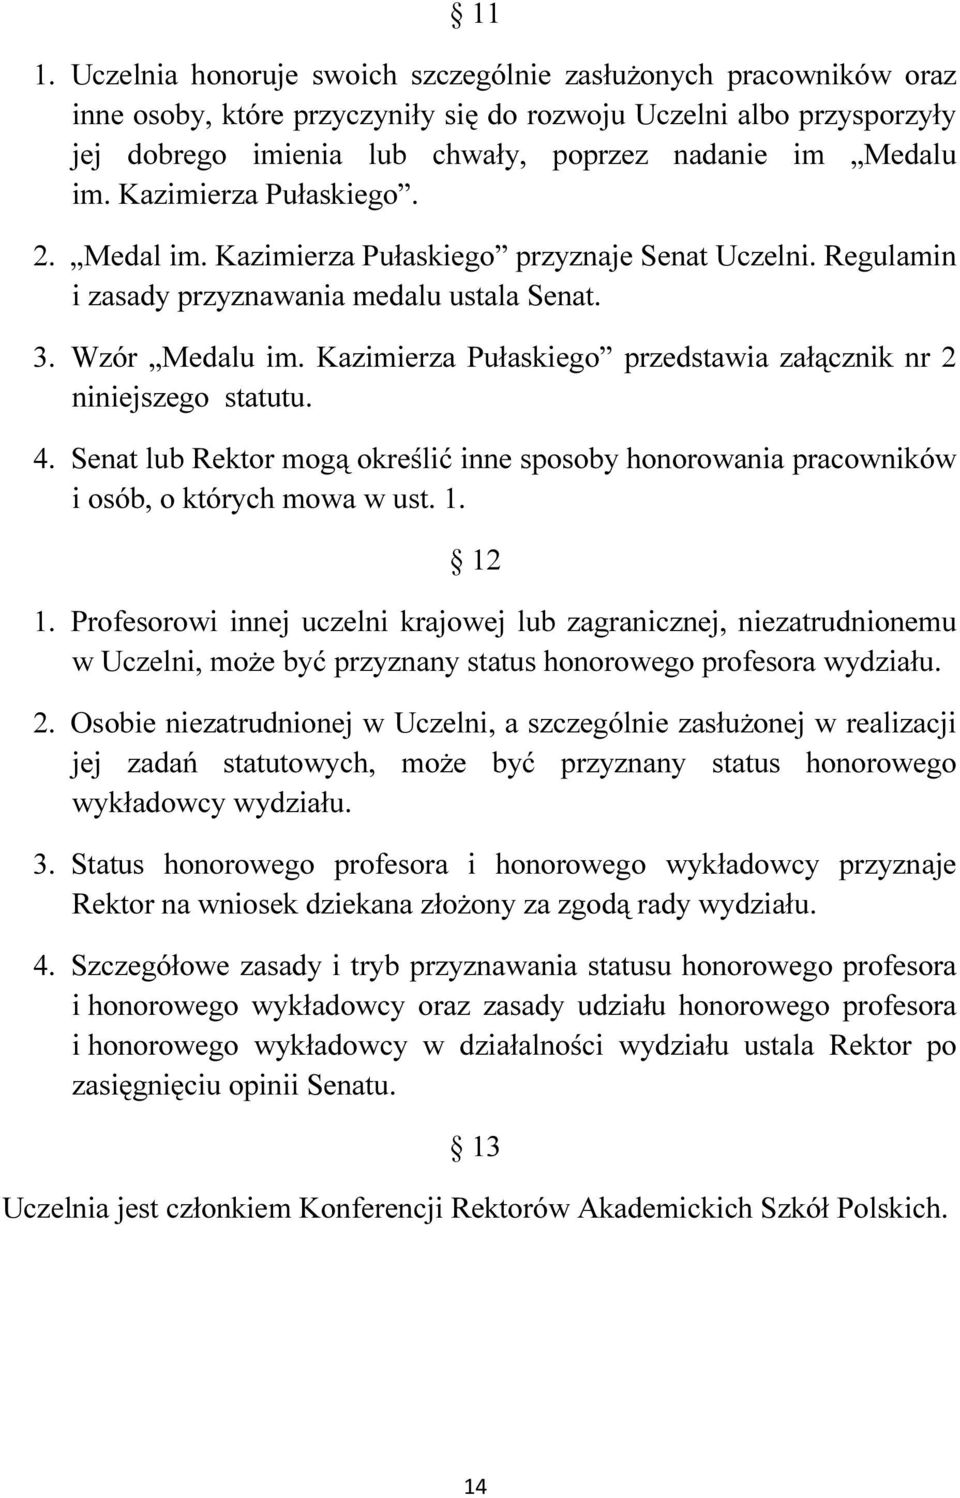 Kazimierza Pułaskiego przedstawia załącznik nr 2 niniejszego statutu. 4. Senat lub Rektor mogą określić inne sposoby honorowania pracowników i osób, o których mowa w ust. 1. 12 1.